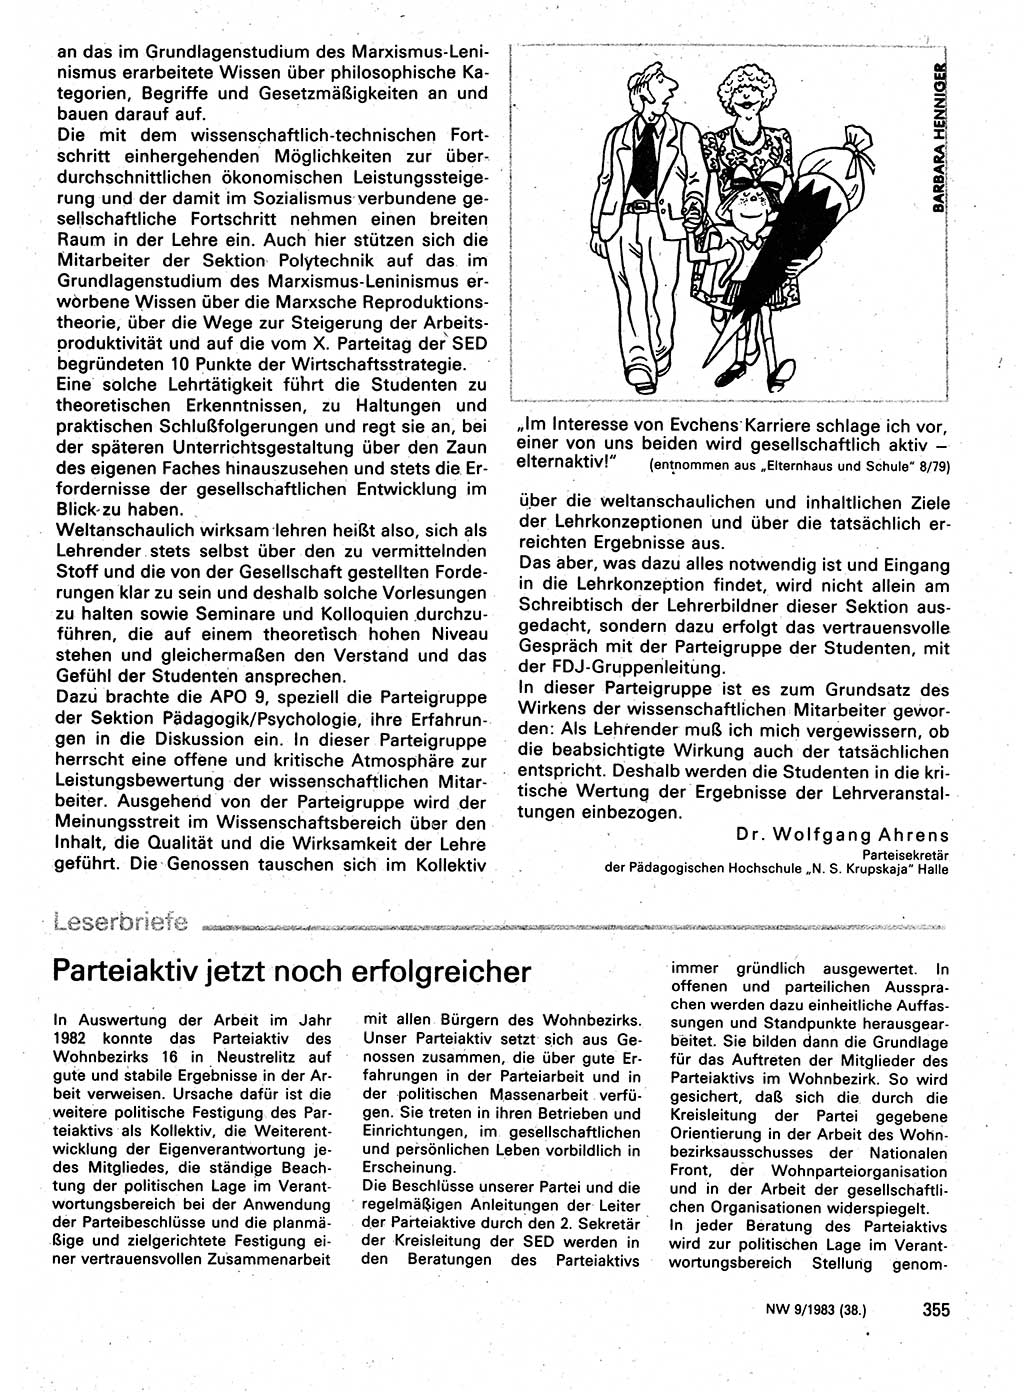 Neuer Weg (NW), Organ des Zentralkomitees (ZK) der SED (Sozialistische Einheitspartei Deutschlands) für Fragen des Parteilebens, 38. Jahrgang [Deutsche Demokratische Republik (DDR)] 1983, Seite 355 (NW ZK SED DDR 1983, S. 355)